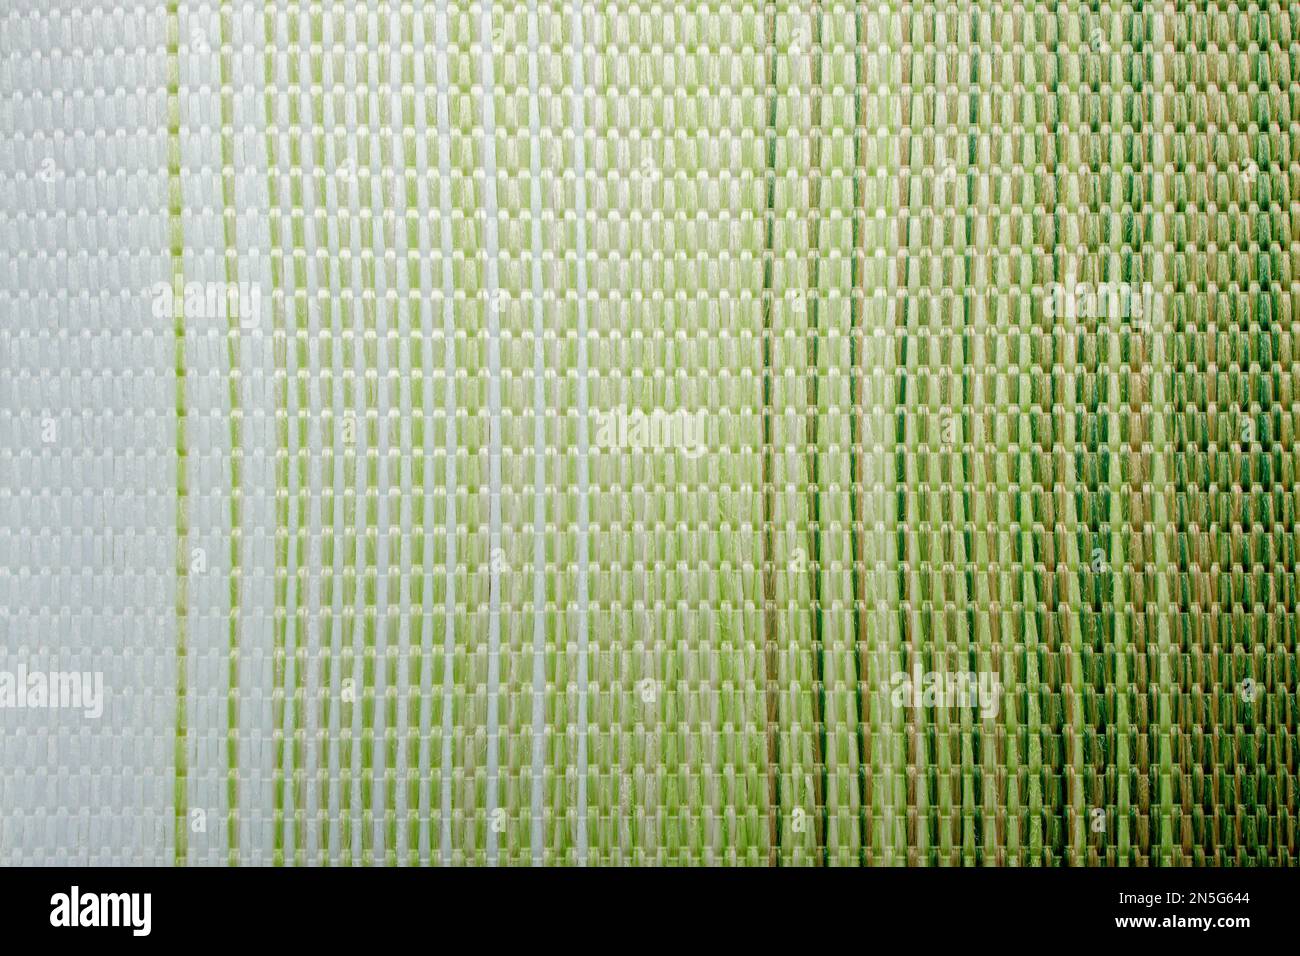 Strukturierter grüner Farbverlauf im Textilhintergrund. Der  Hintergrundstoff ist ein dichter Sonnenschutzstoff, der für Stoffjalousien  verwendet wird Stockfotografie - Alamy